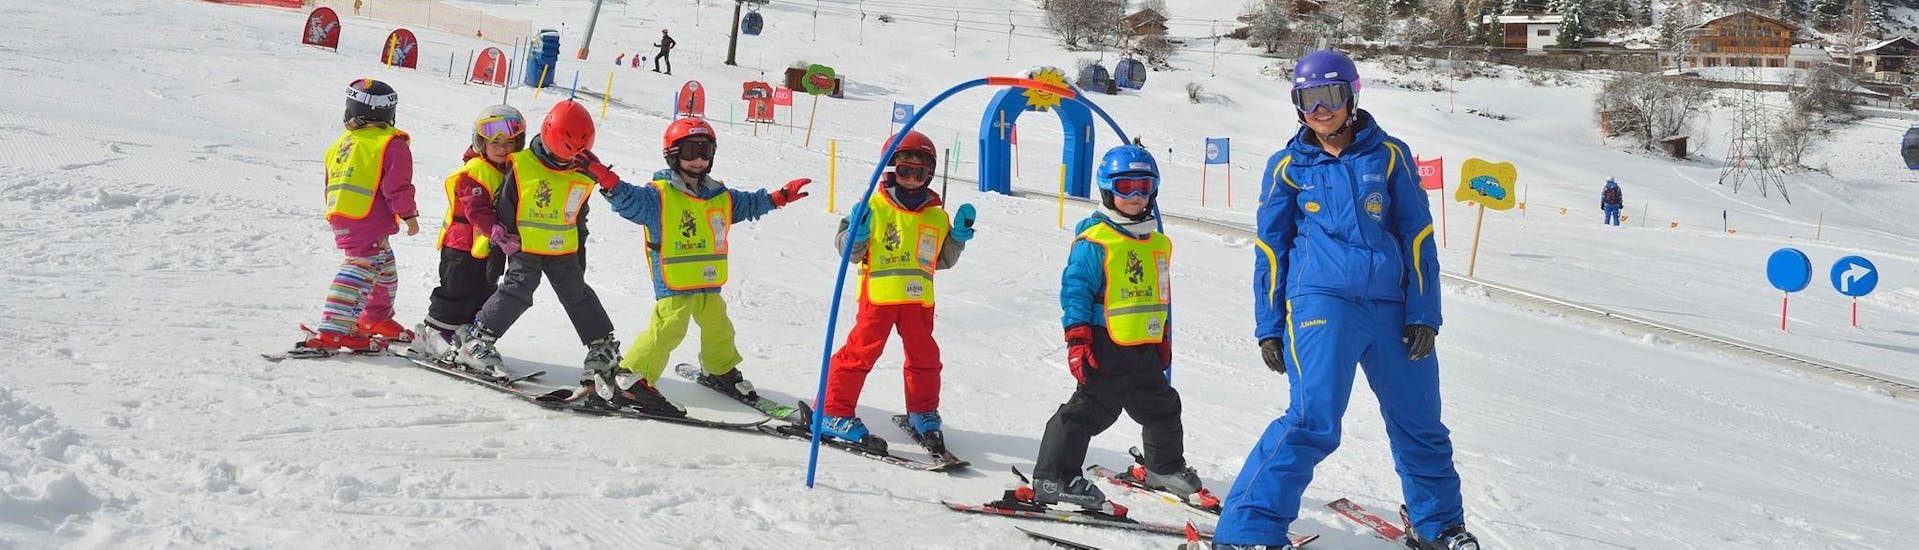 Lezioni di sci per bambini (5-12 anni) per tutti i livelli.